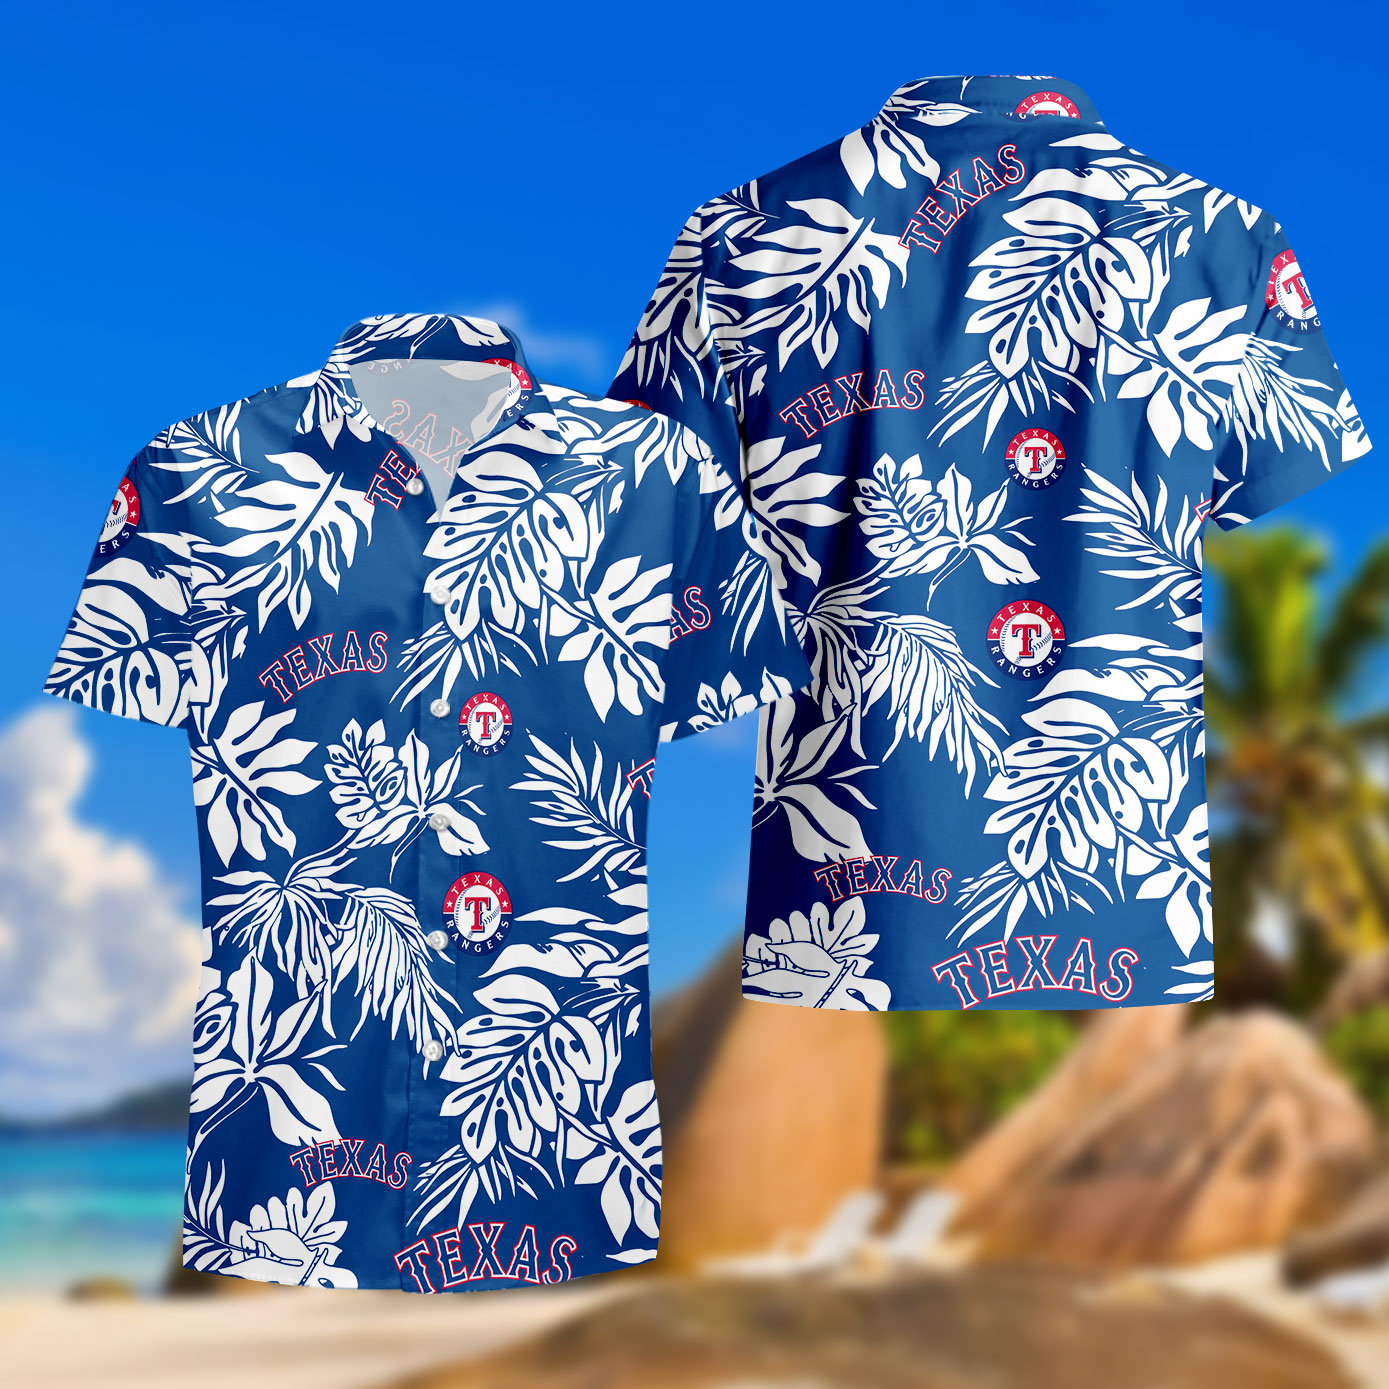 Los Angeles Dodgers Mlb Tommy Bahama Hawaii Summer Hawaiian Shirt And Short